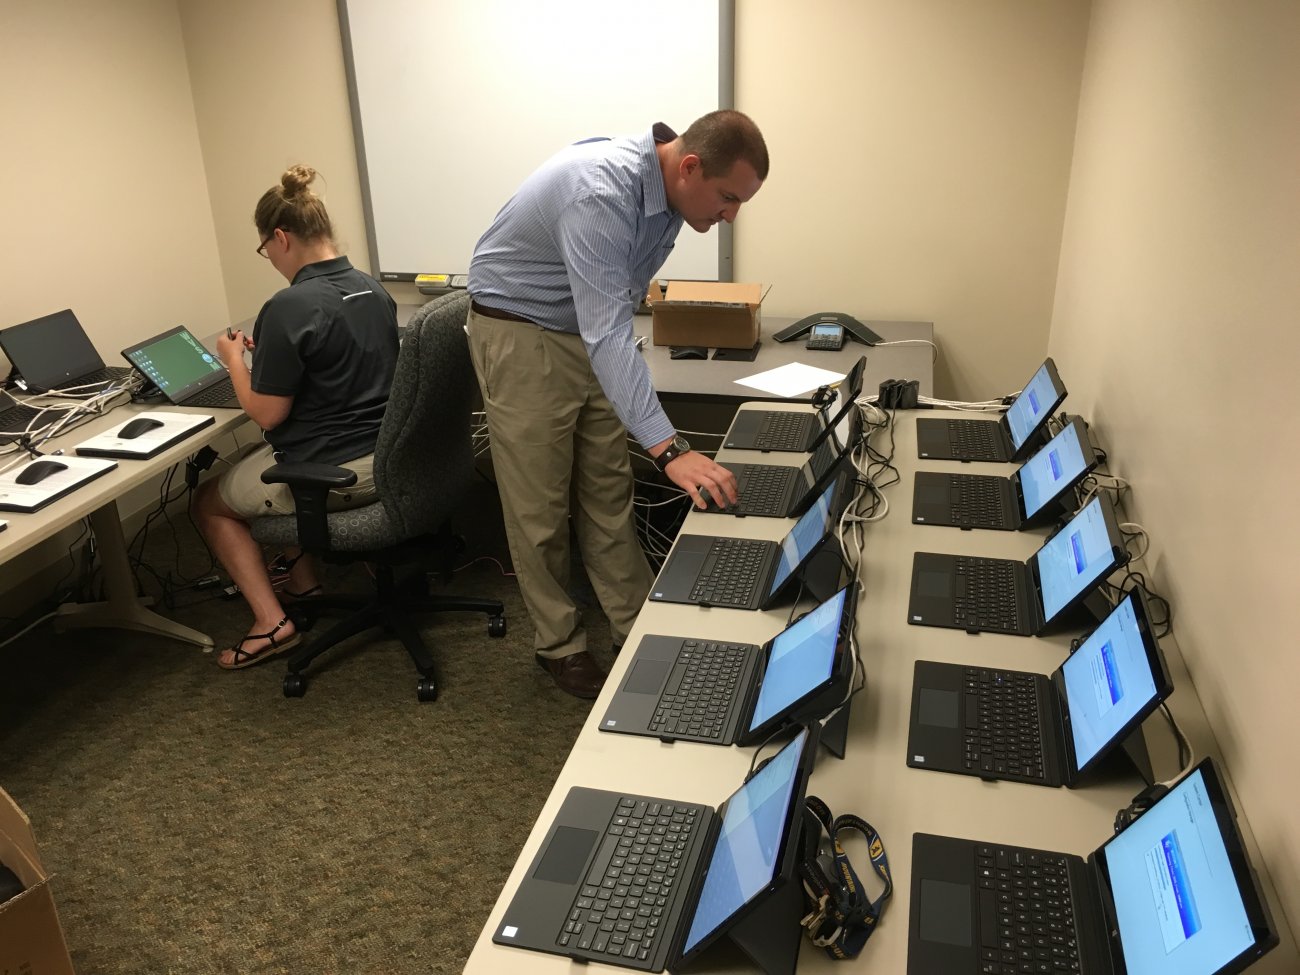 IT staff preparing computers